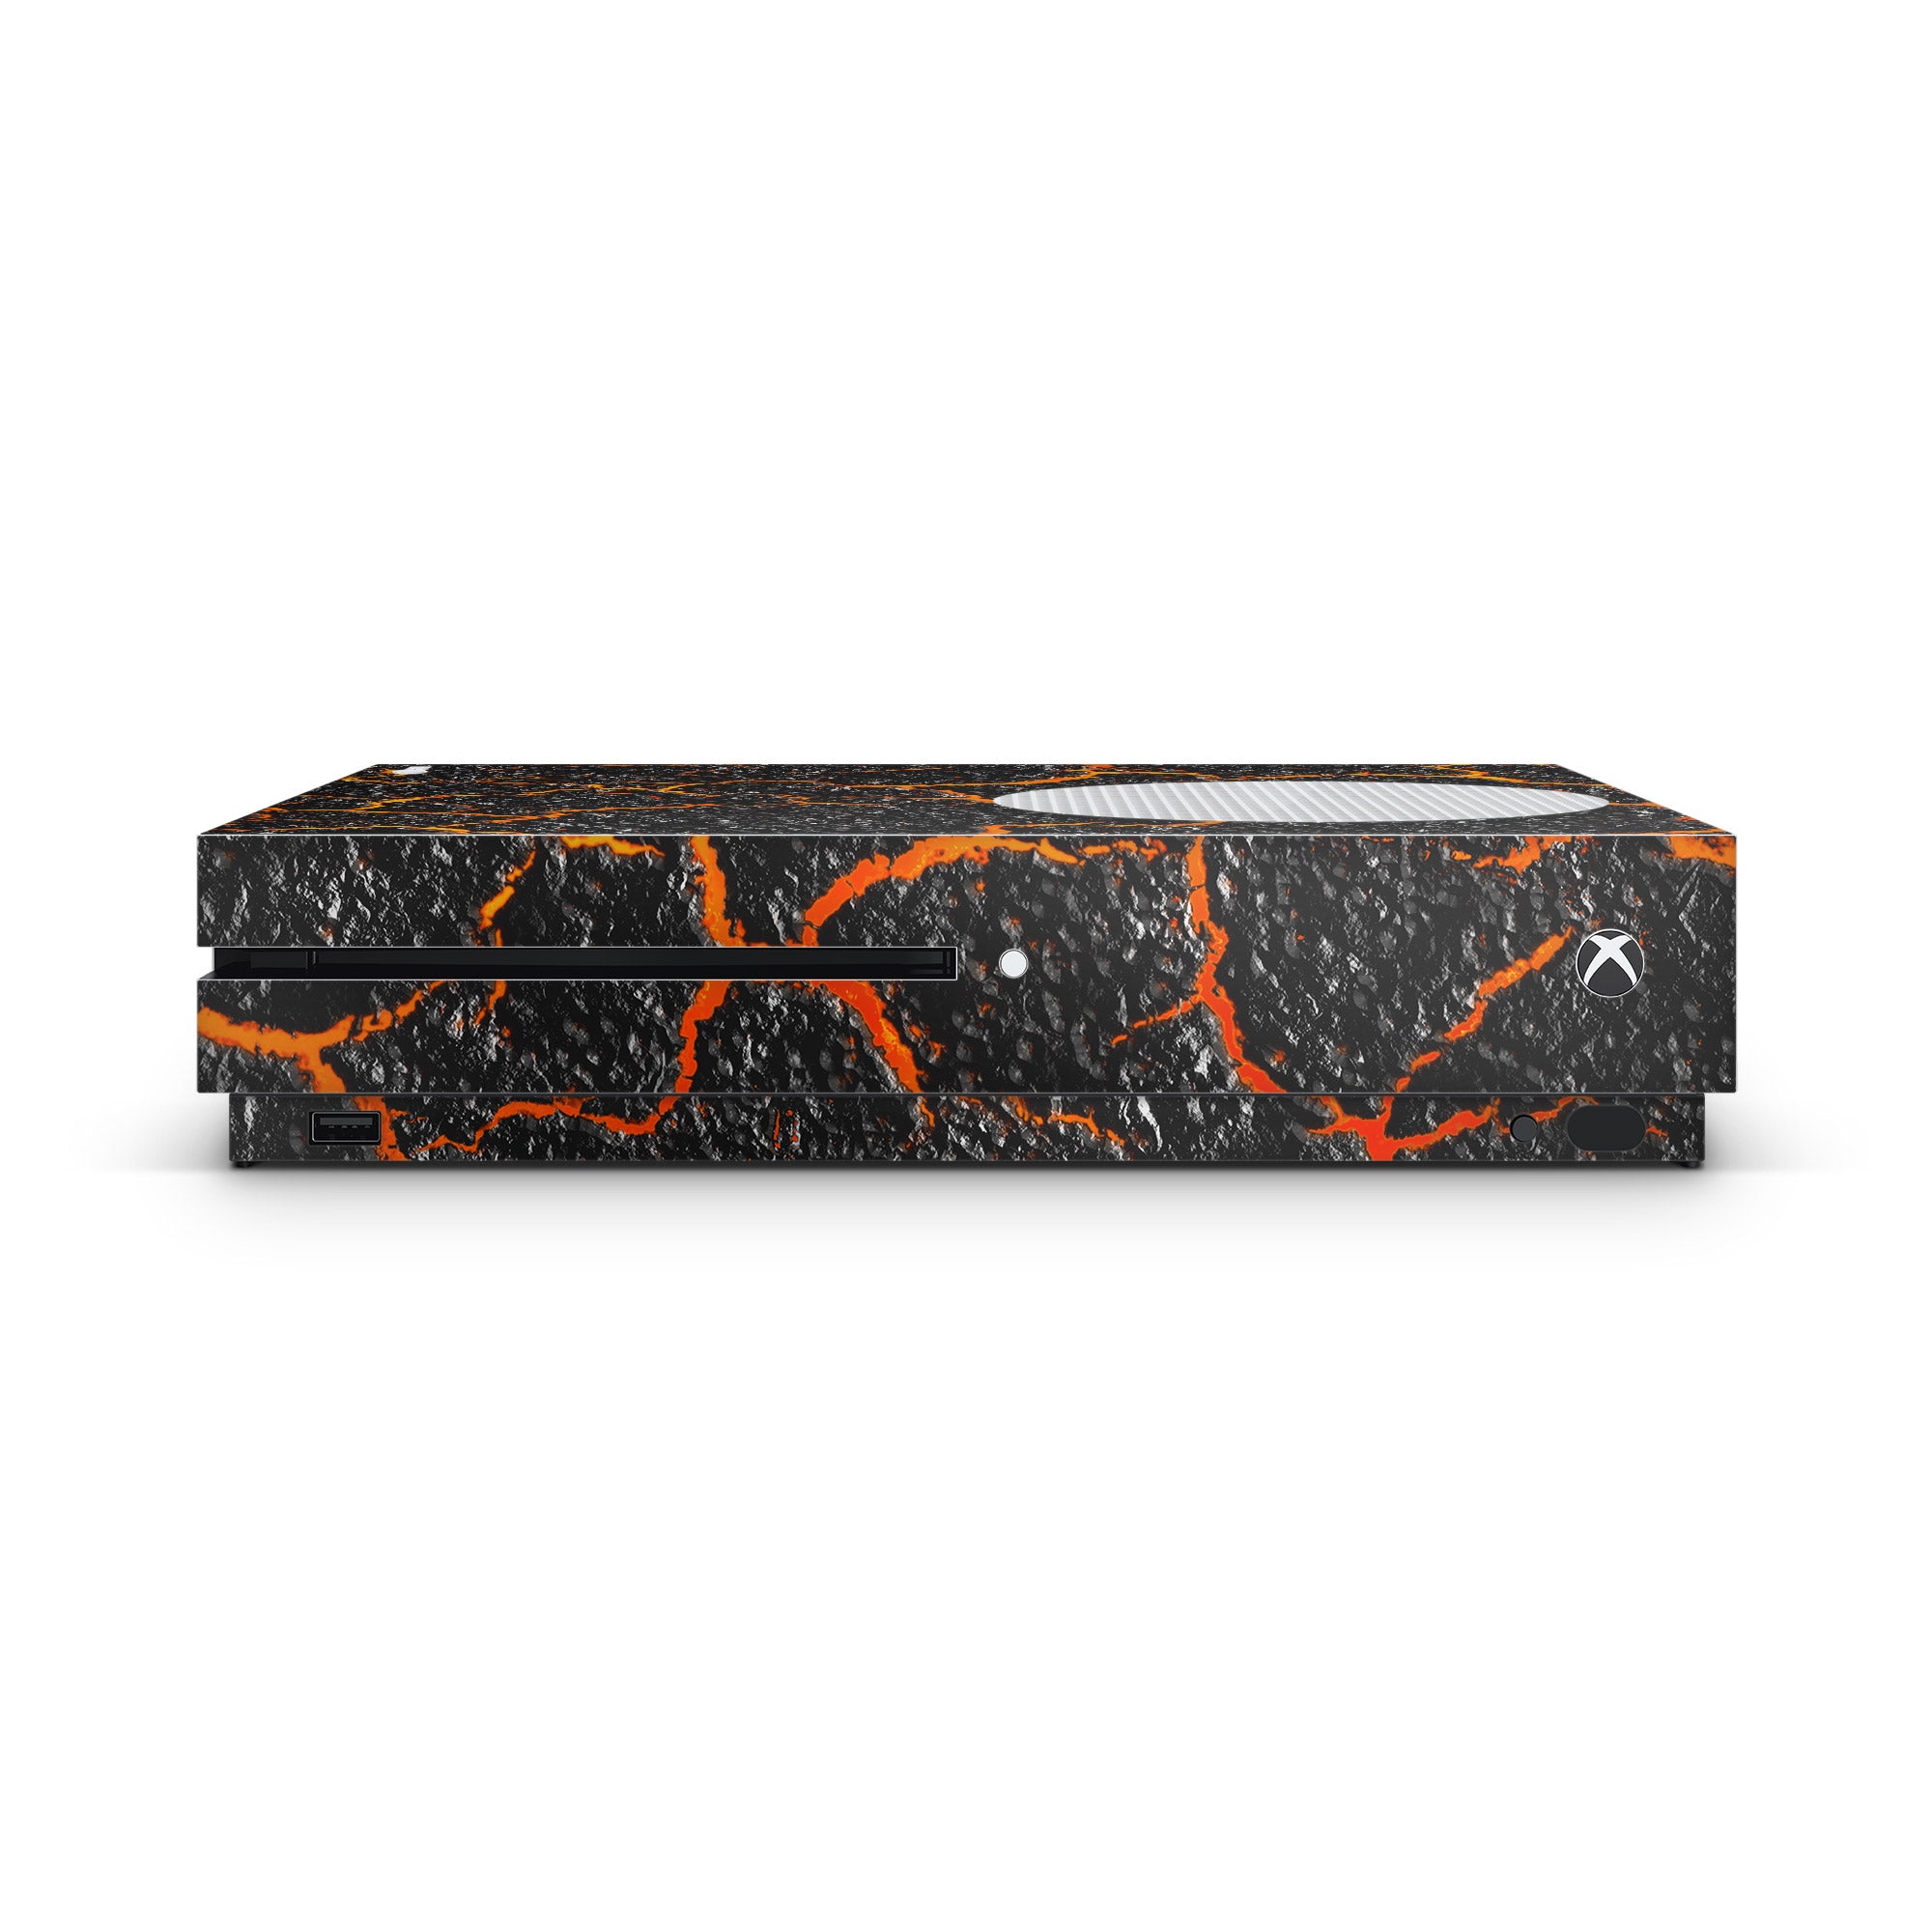 lava-console-skin-xbox-one-s-lava-vinyl-wrap